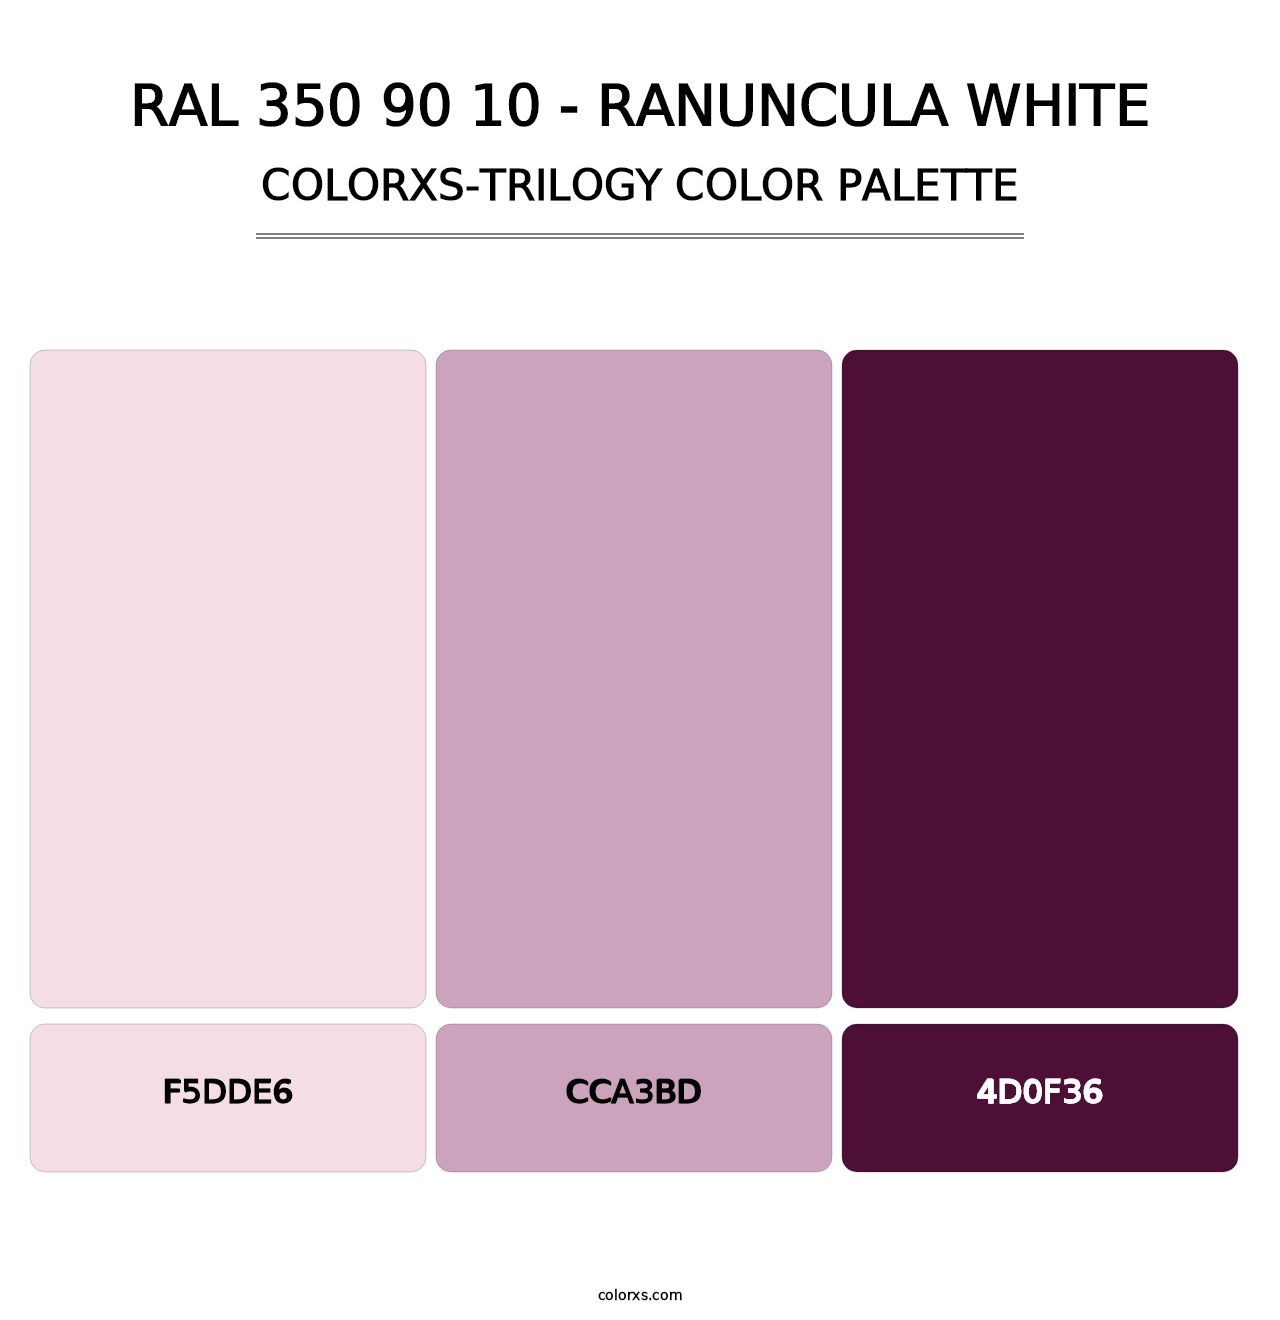 RAL 350 90 10 - Ranuncula White - Colorxs Trilogy Palette